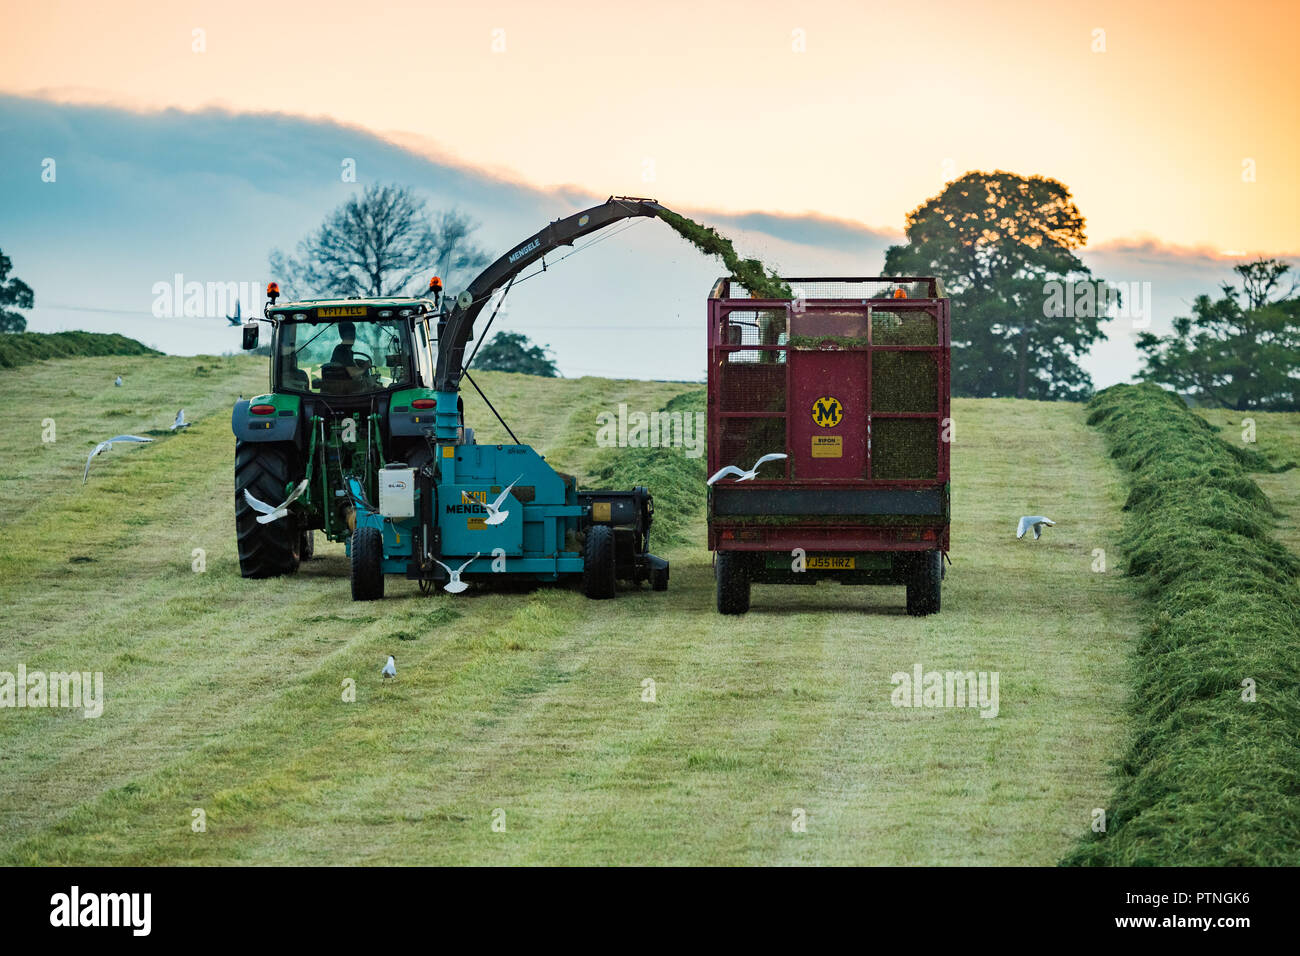 Lavorando insieme in una fattoria campo,1 il traino del trattore trincia & 1 raccolta di erba tagliata per insilati in trailer - serata dello Yorkshire, Inghilterra, GB, Regno Unito Foto Stock